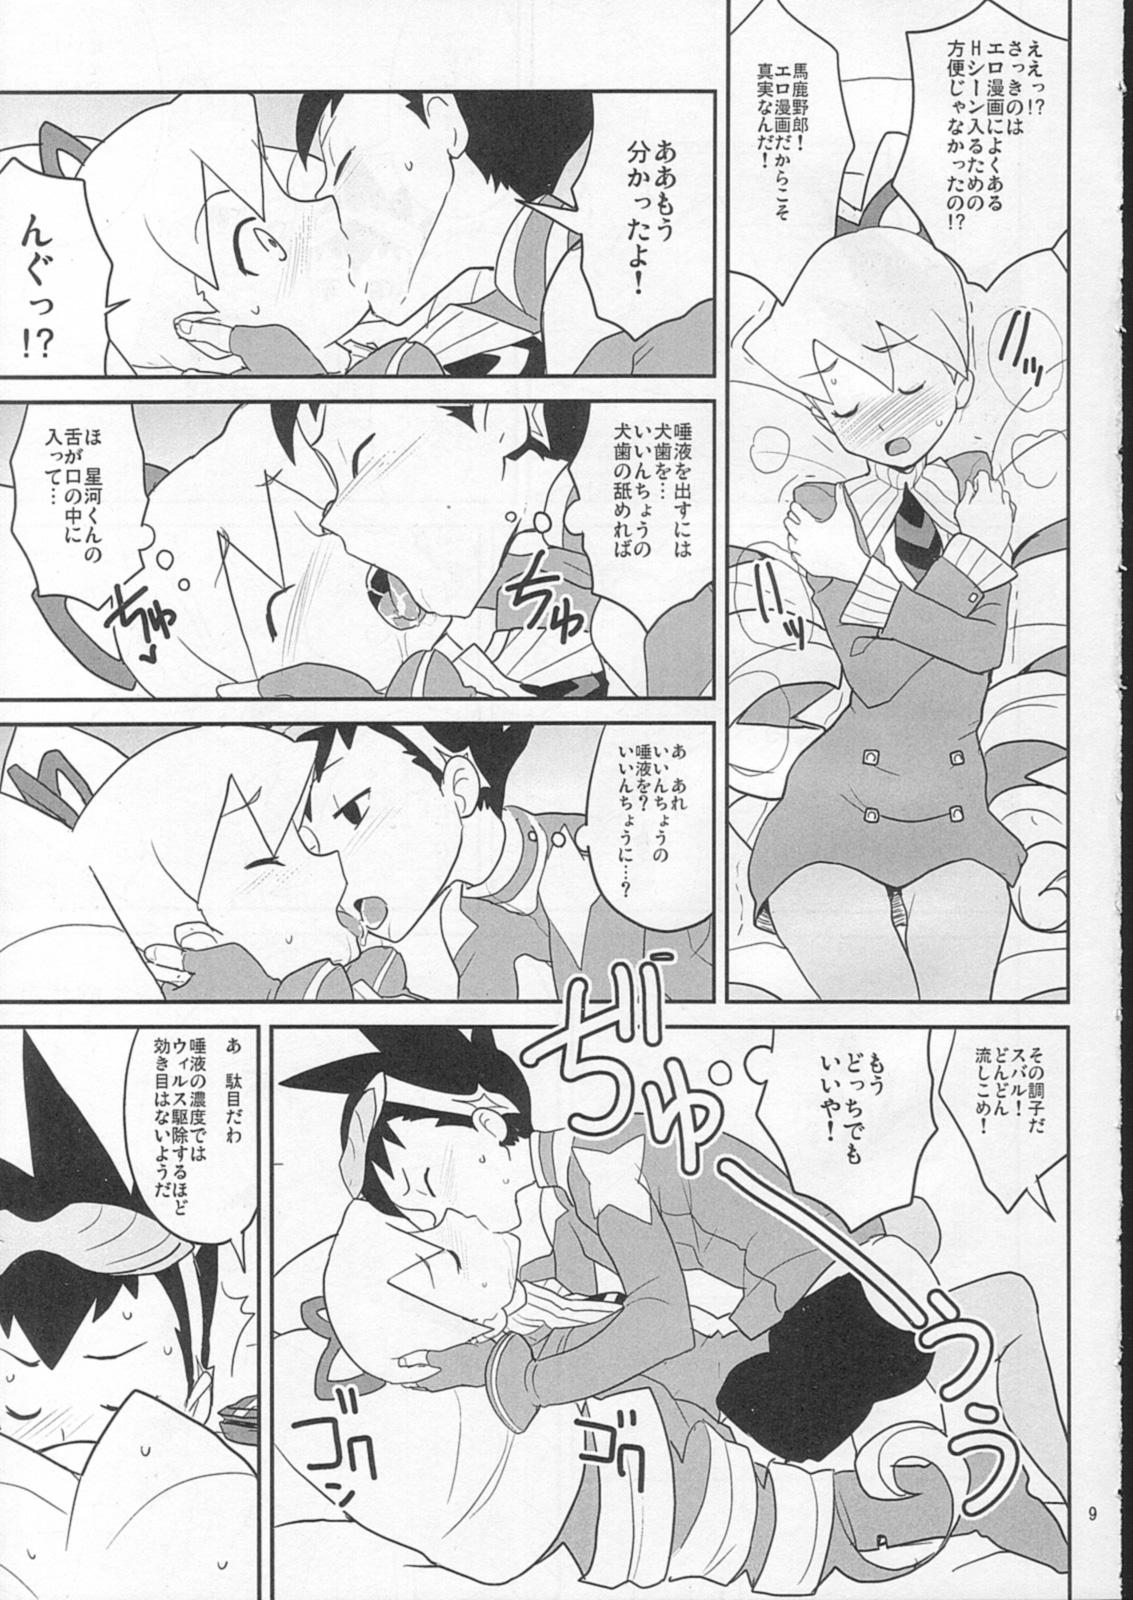 Huge Sukisuki Seiga-kun! - Mega man star force Little - Page 8